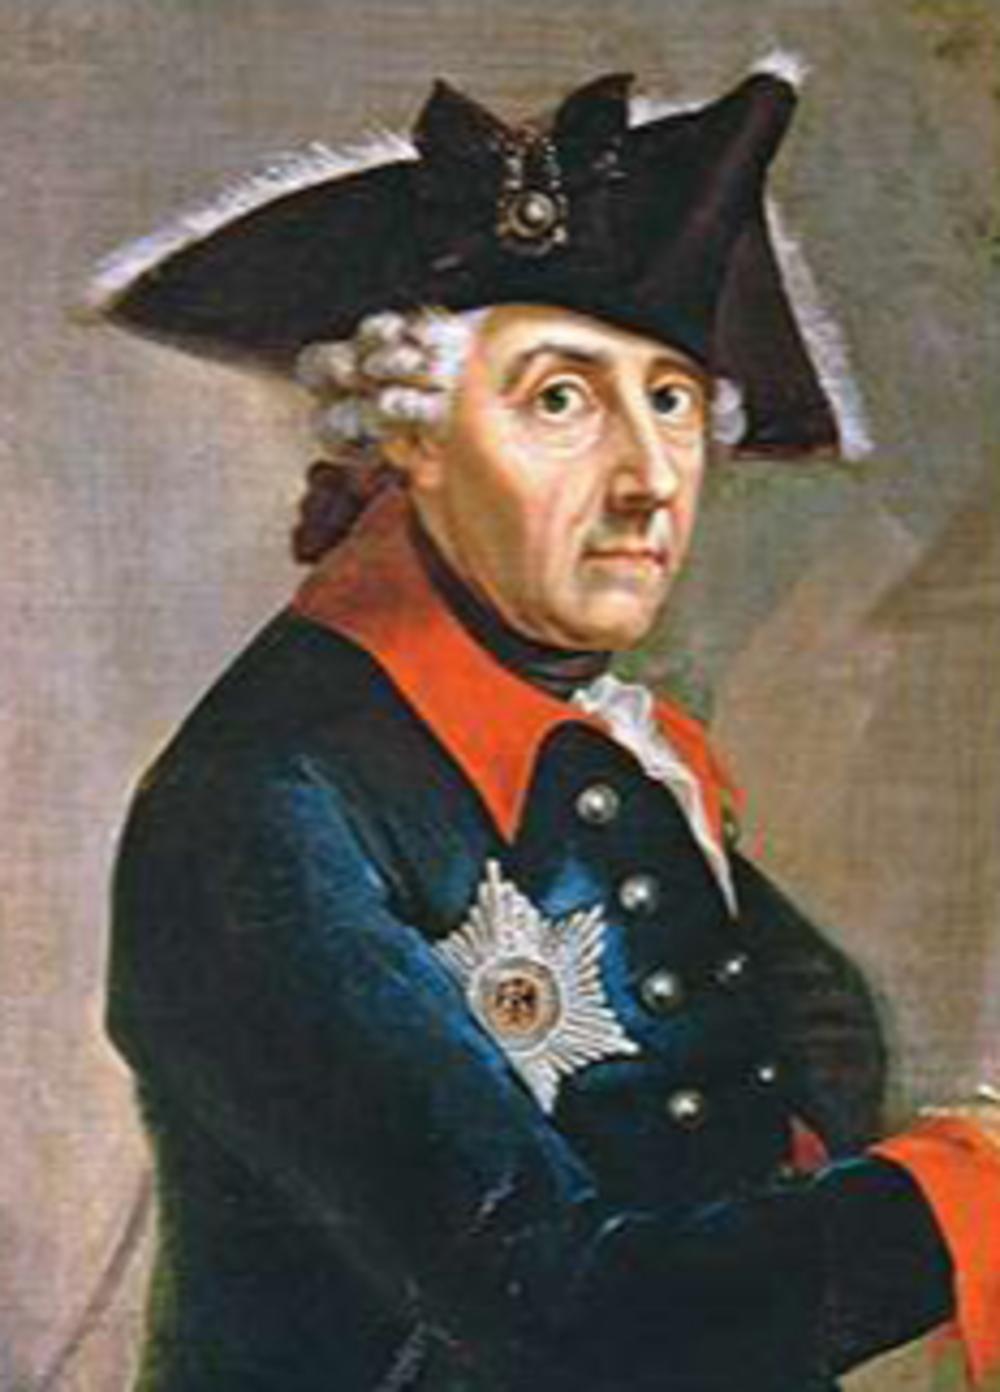 Frederik de Grote